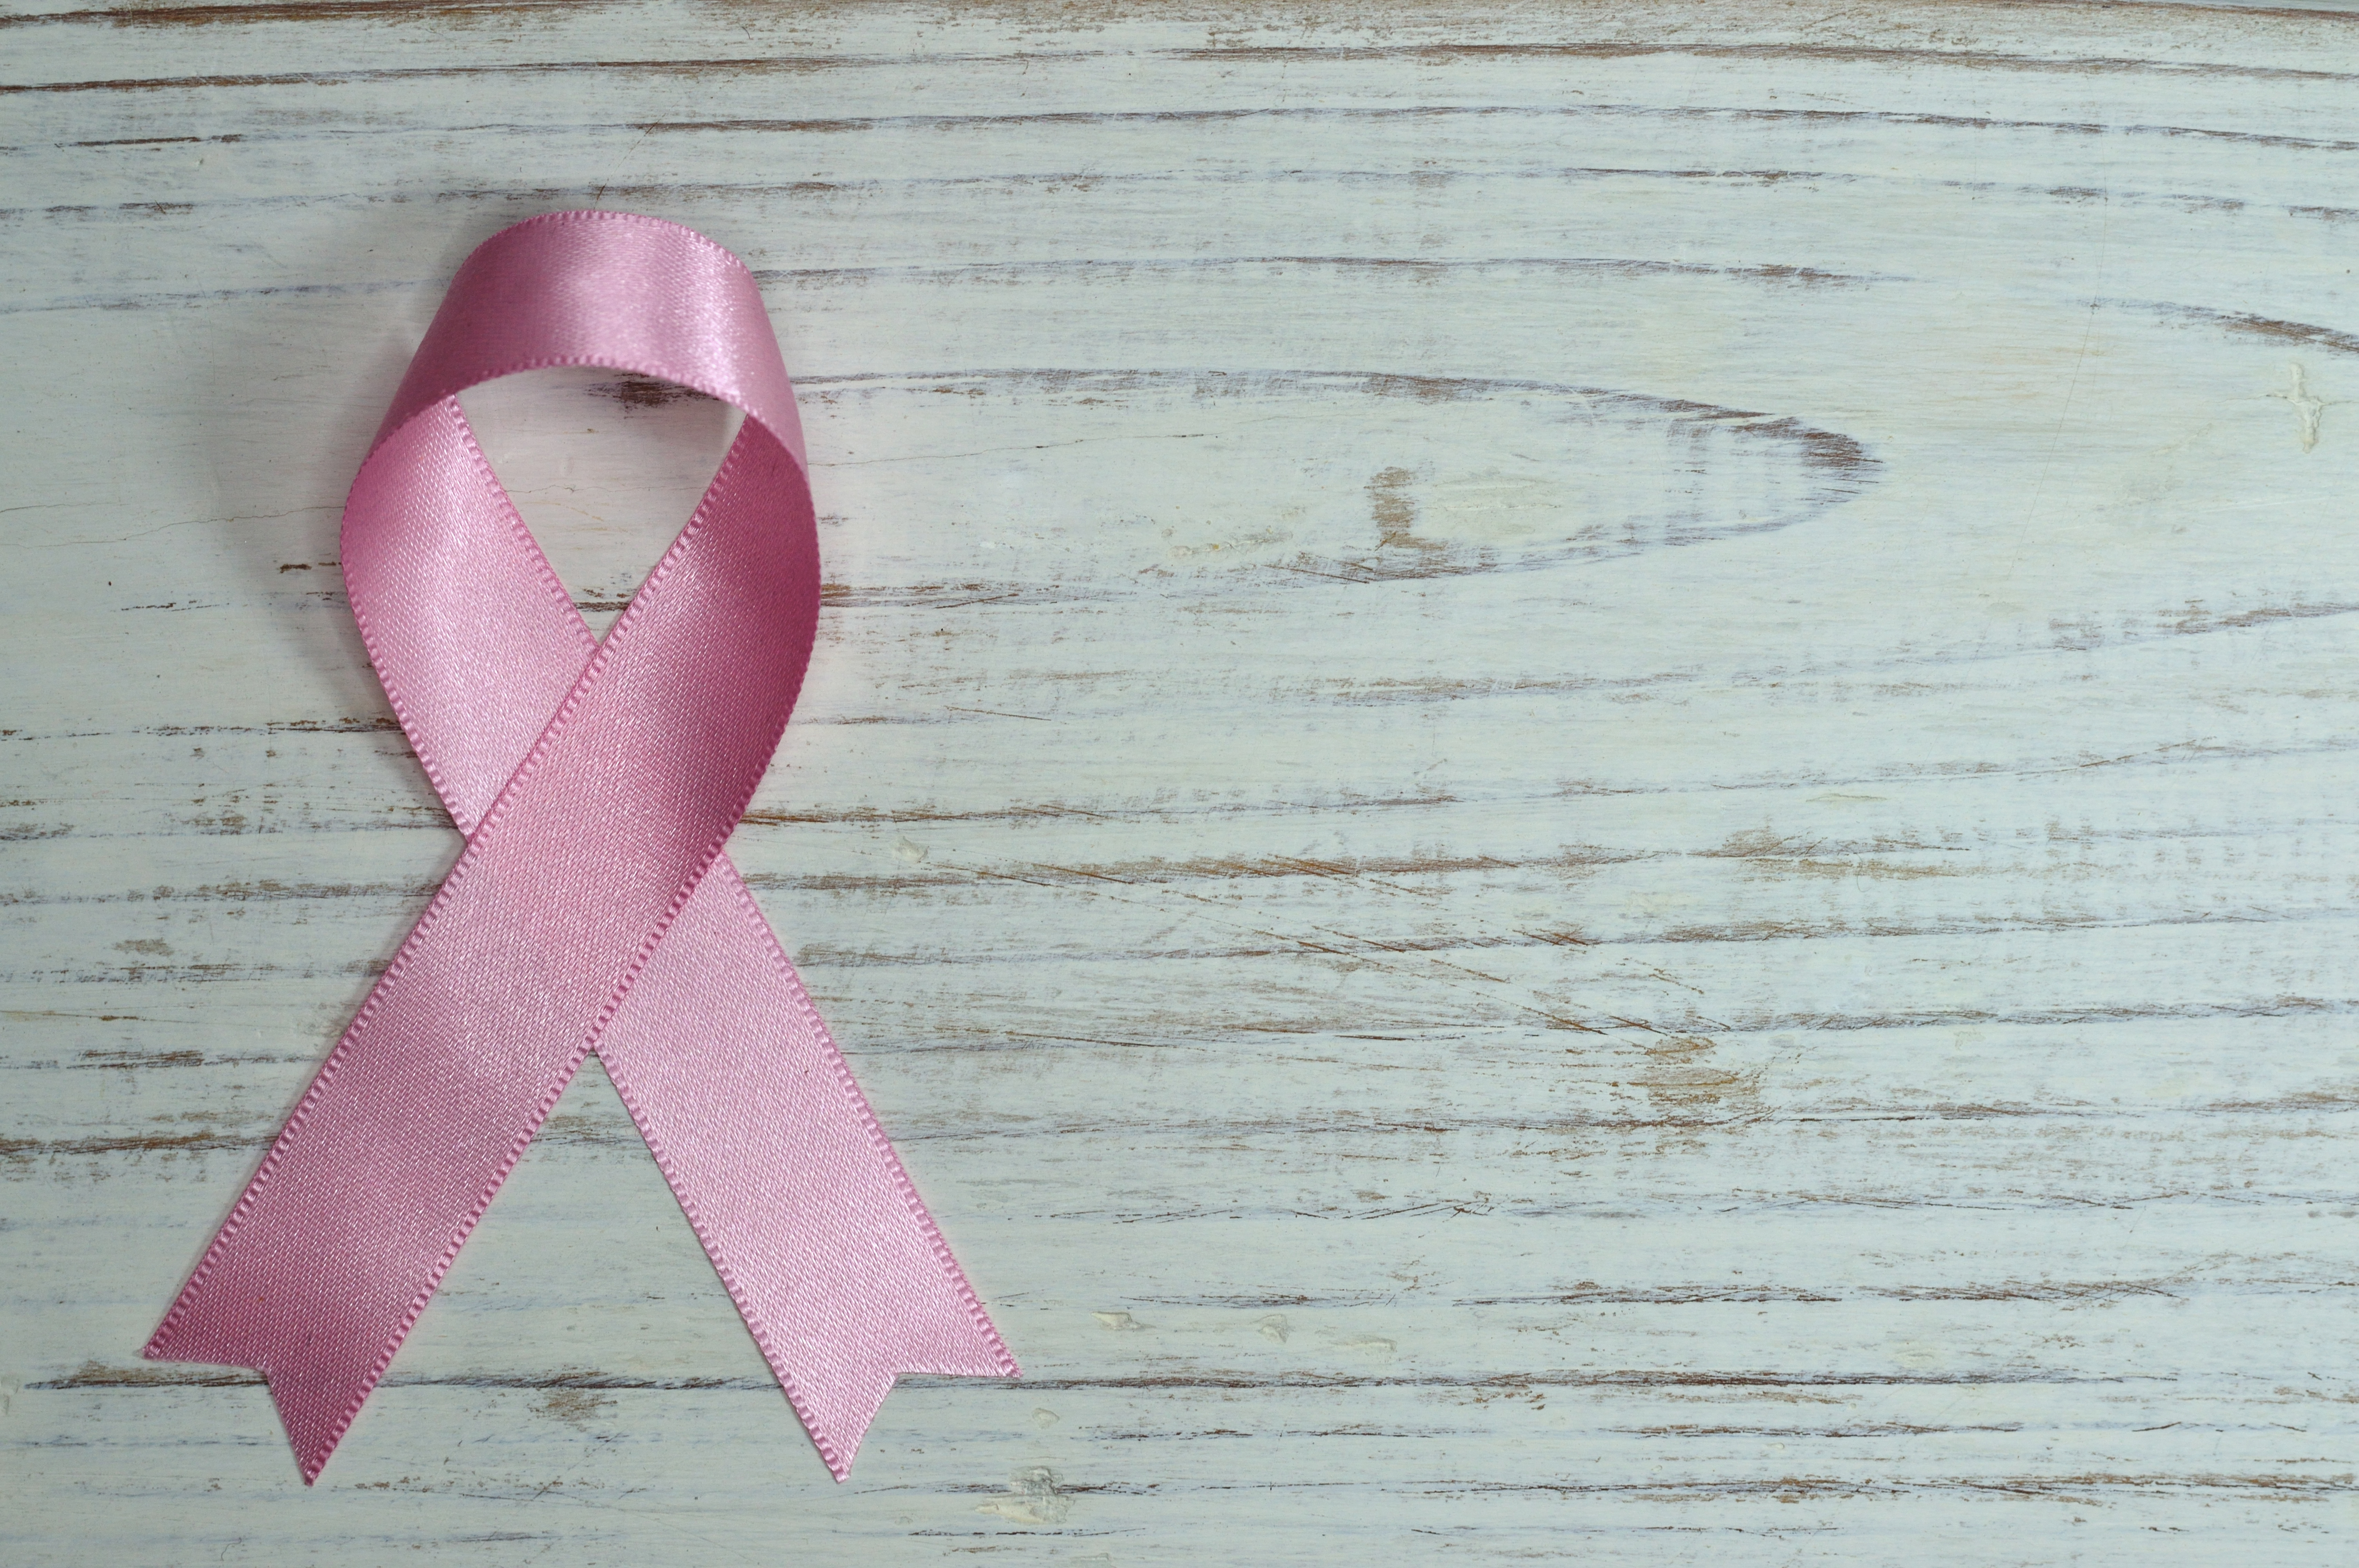 30 Beautiful Breast Cancer Awareness Photos - Marco De Fotos Contra El Cancer De Mama , HD Wallpaper & Backgrounds